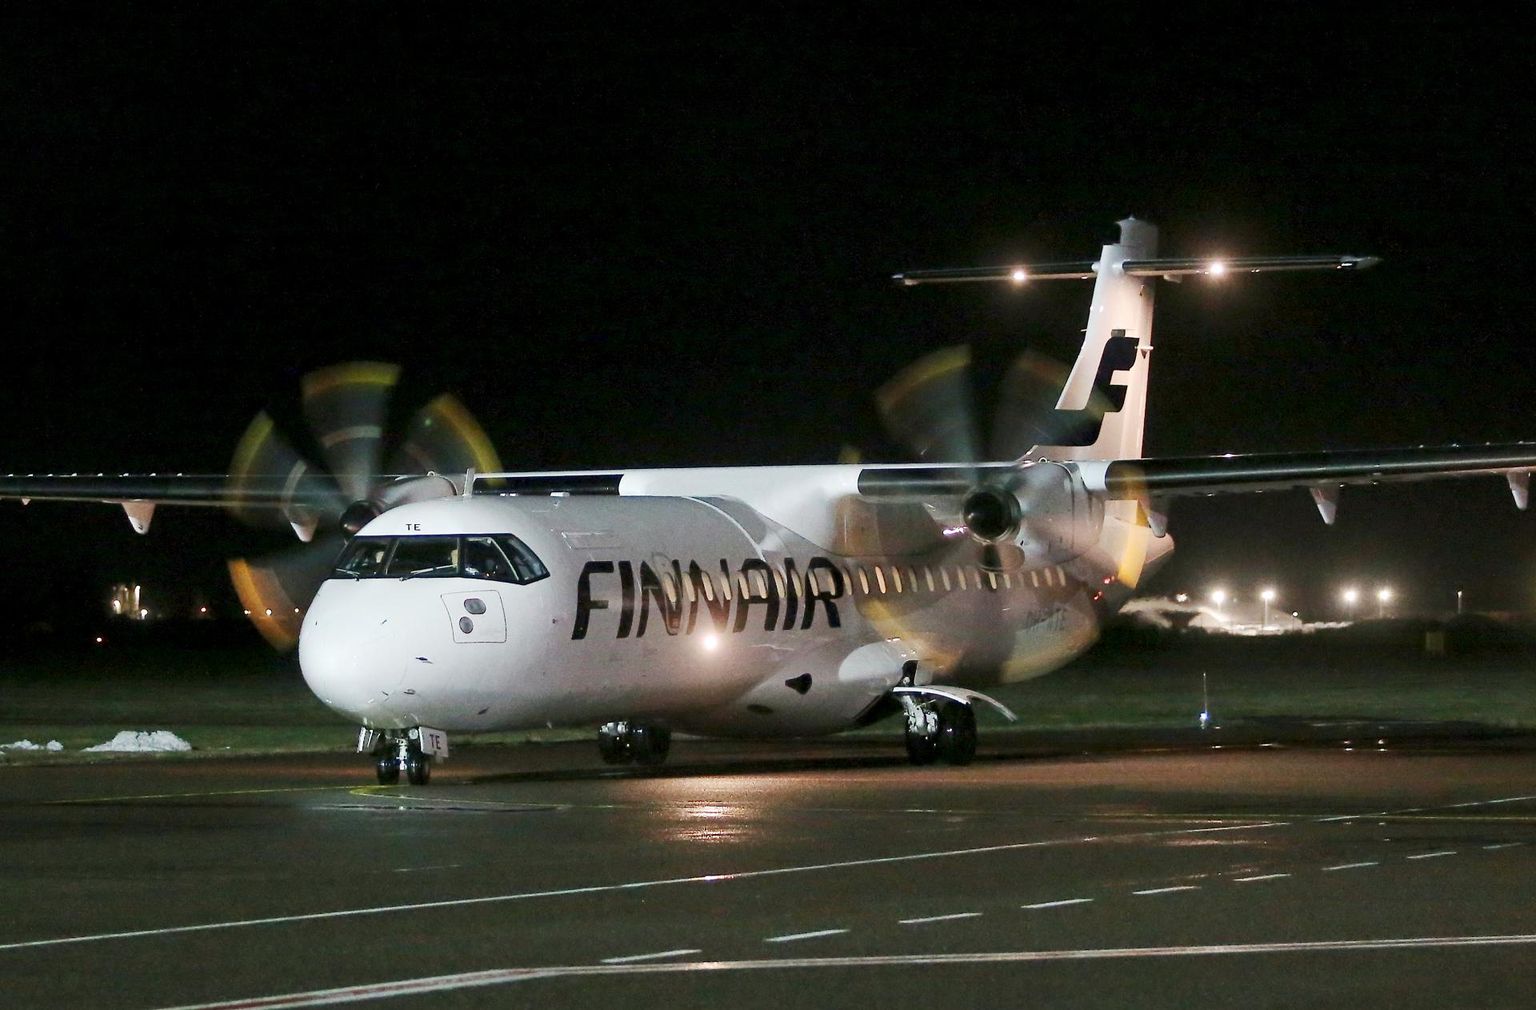 Maandunud Finnairi lennuk Ülenurme lennuväljal.
 